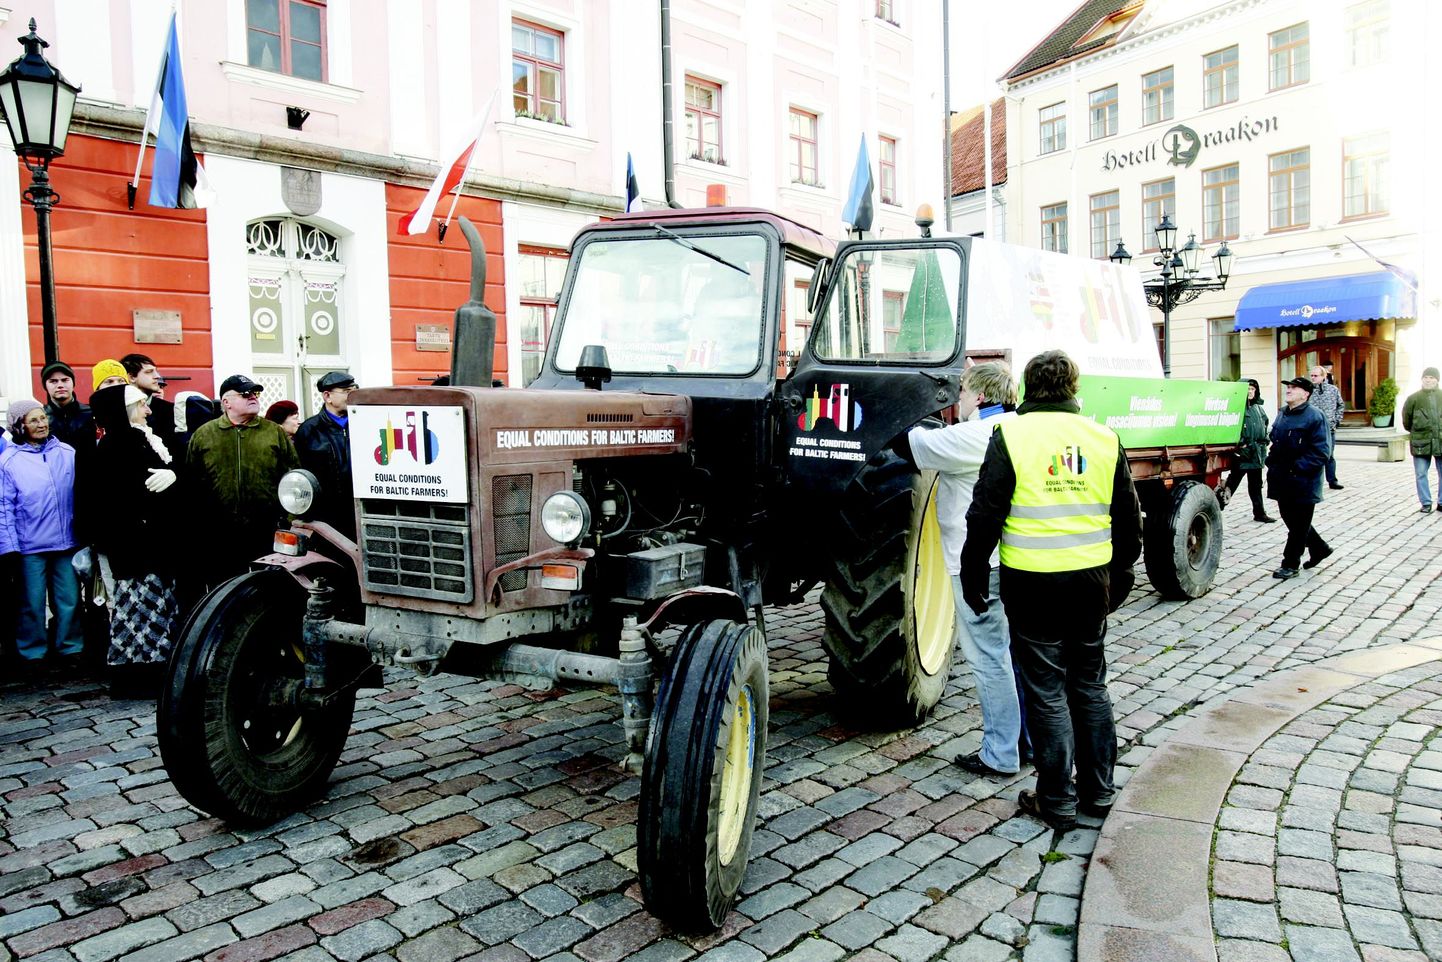 Эстонские фермеры устали ждать поддержки от ЕС. Скорее трактор до Брюсселя доберется...